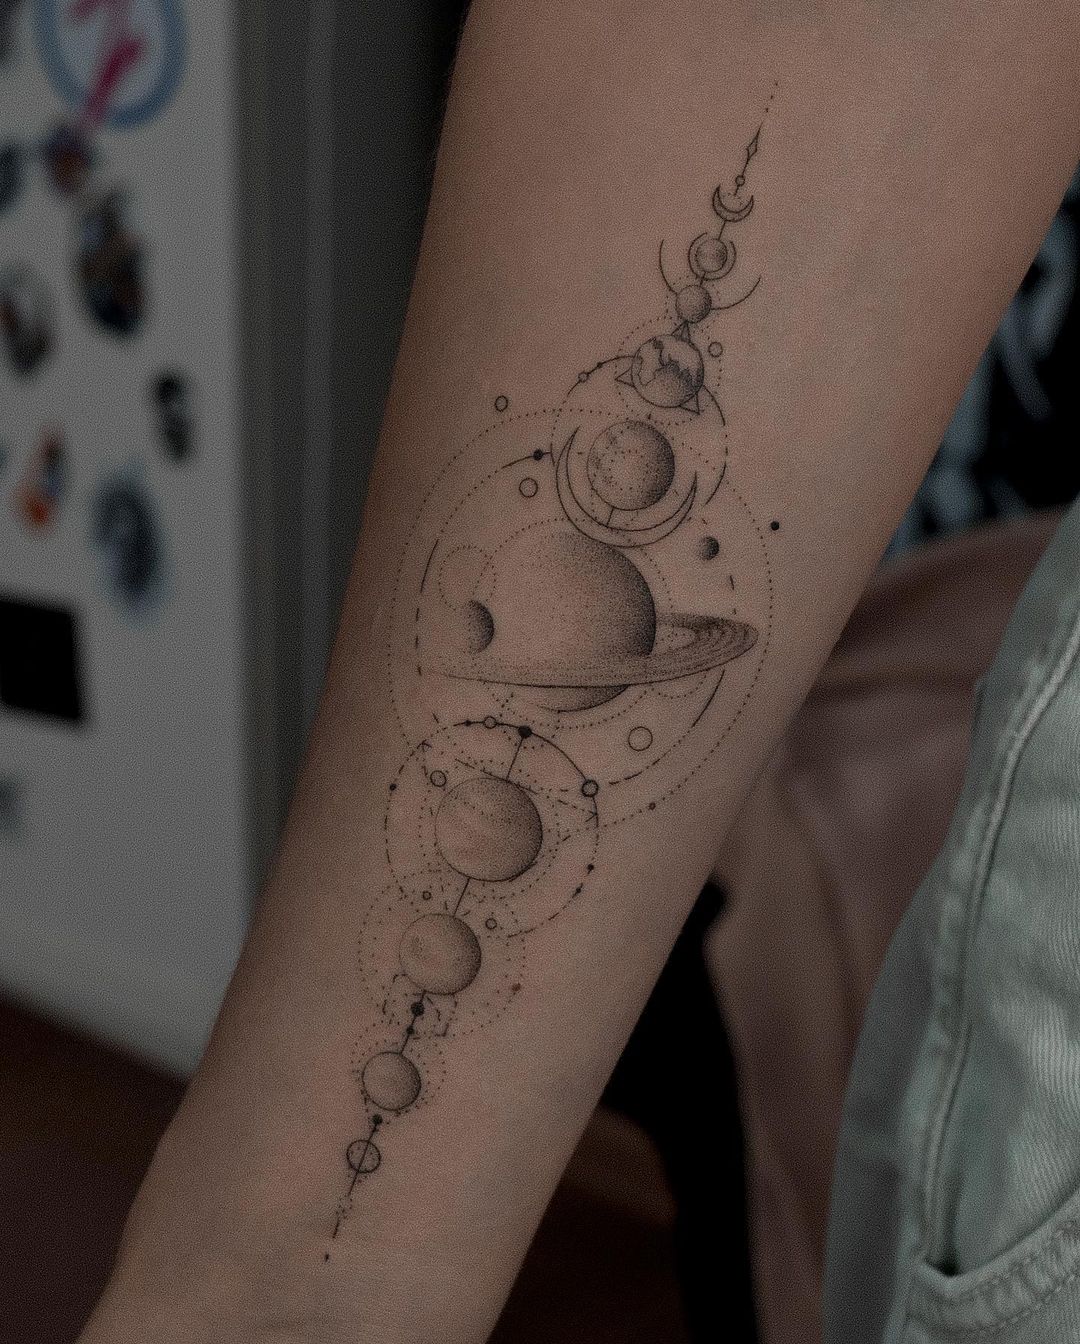 Solar system tattoo by fedornozdrin